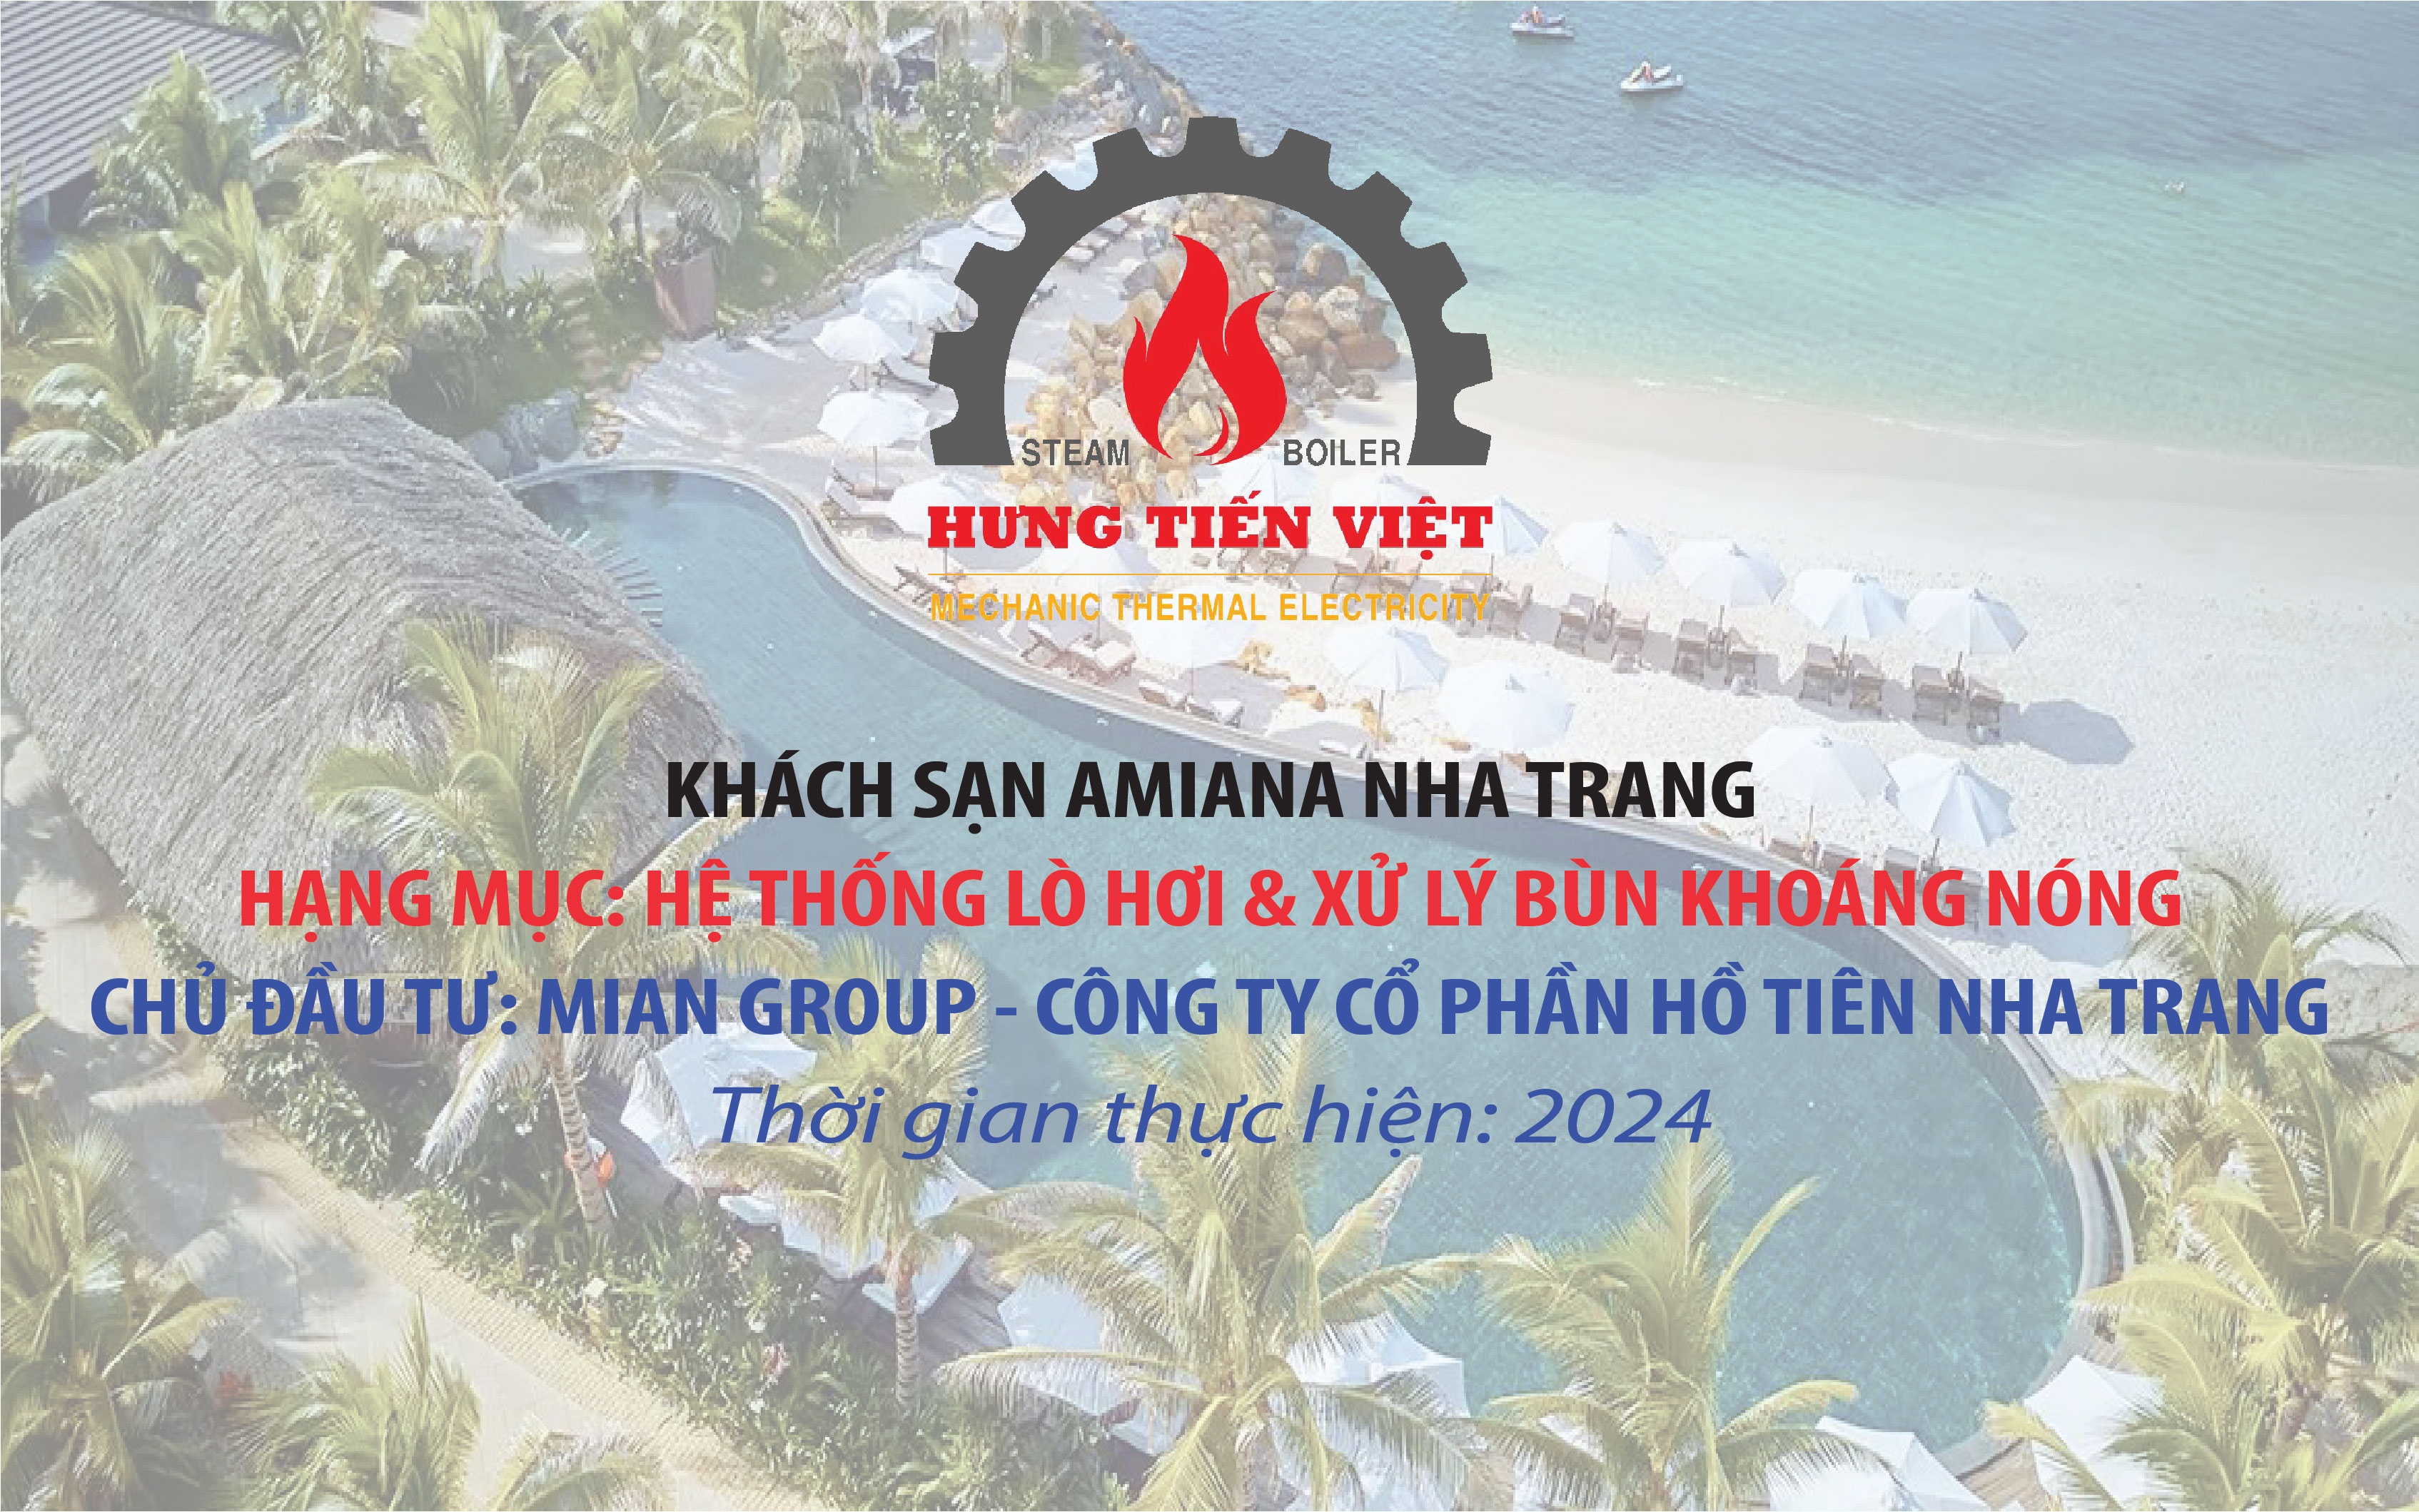 Dự án: Khách sạn Amiana Nha Trang - Hạng mục: Hệ thống Lò hơi & Xử lý Bùn khoáng nóng